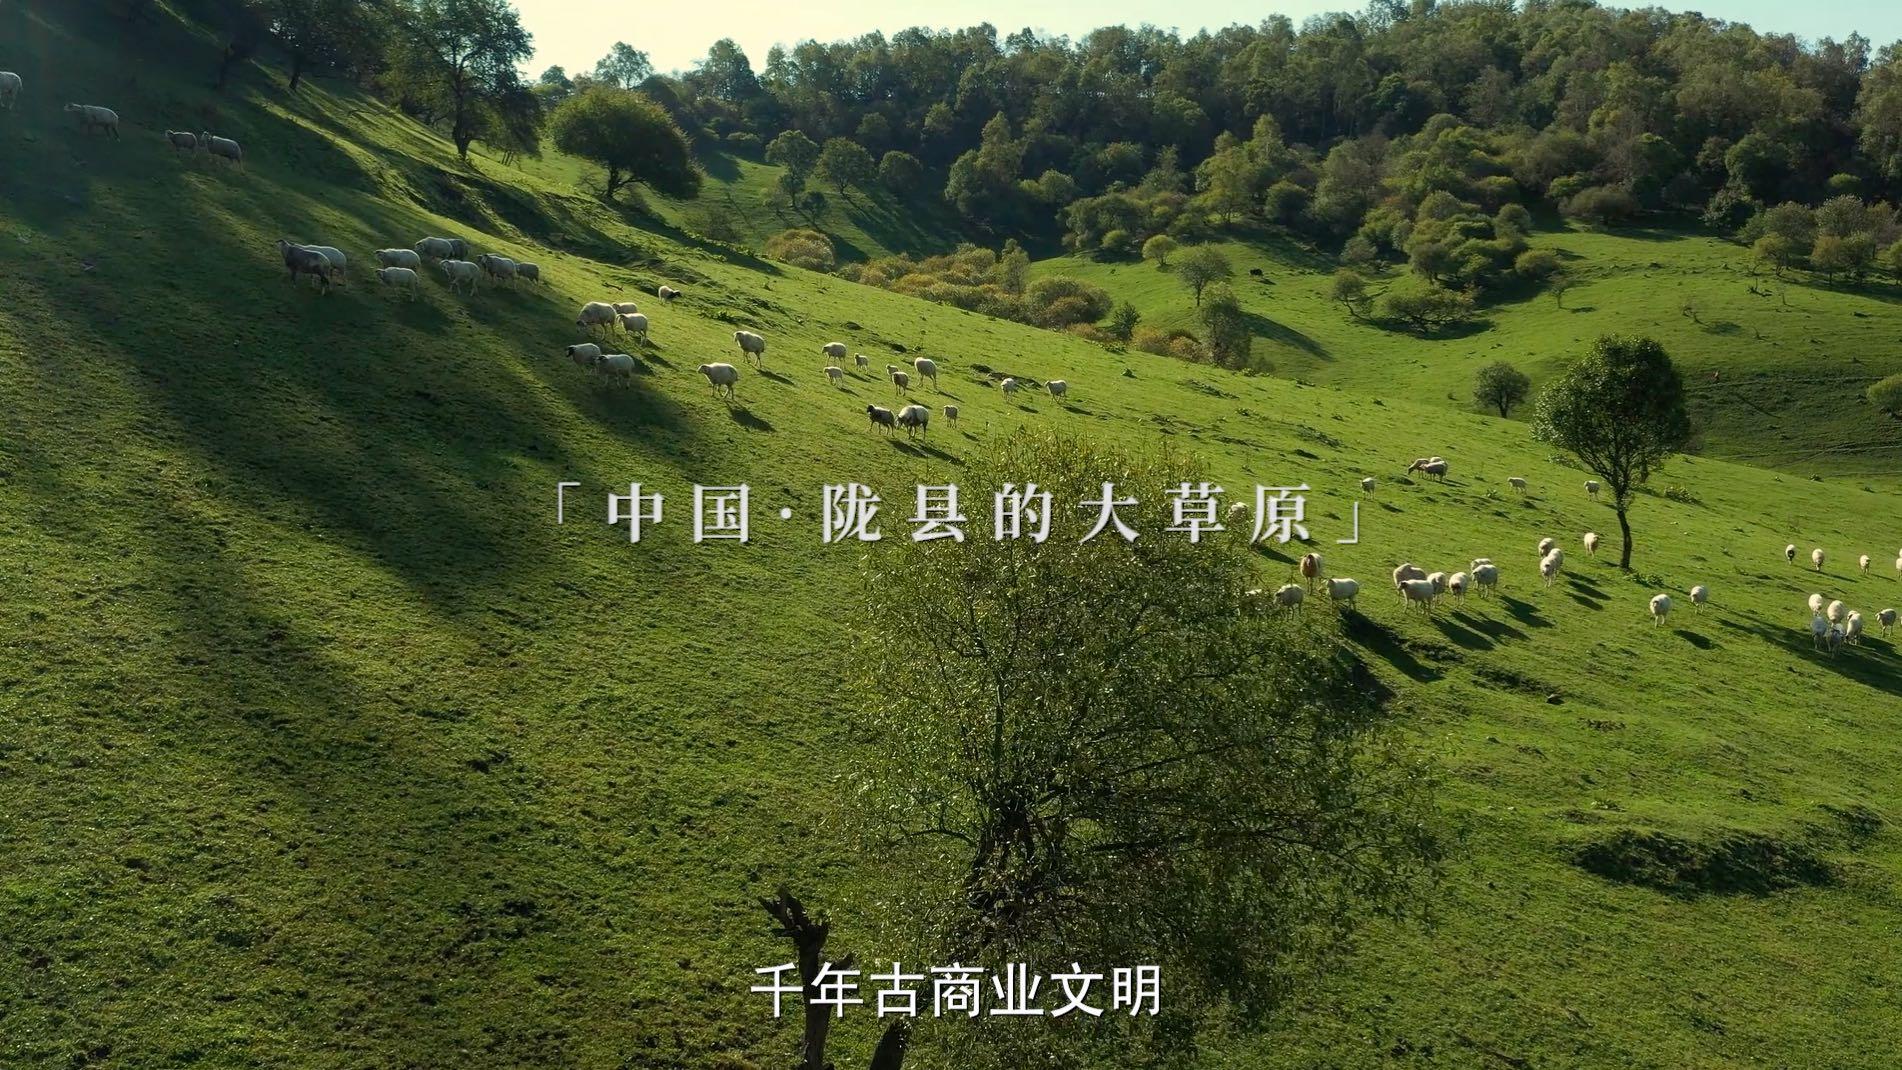 【飞鹤】羊奶粉上市宣传片-《滴滴鲜承诺》